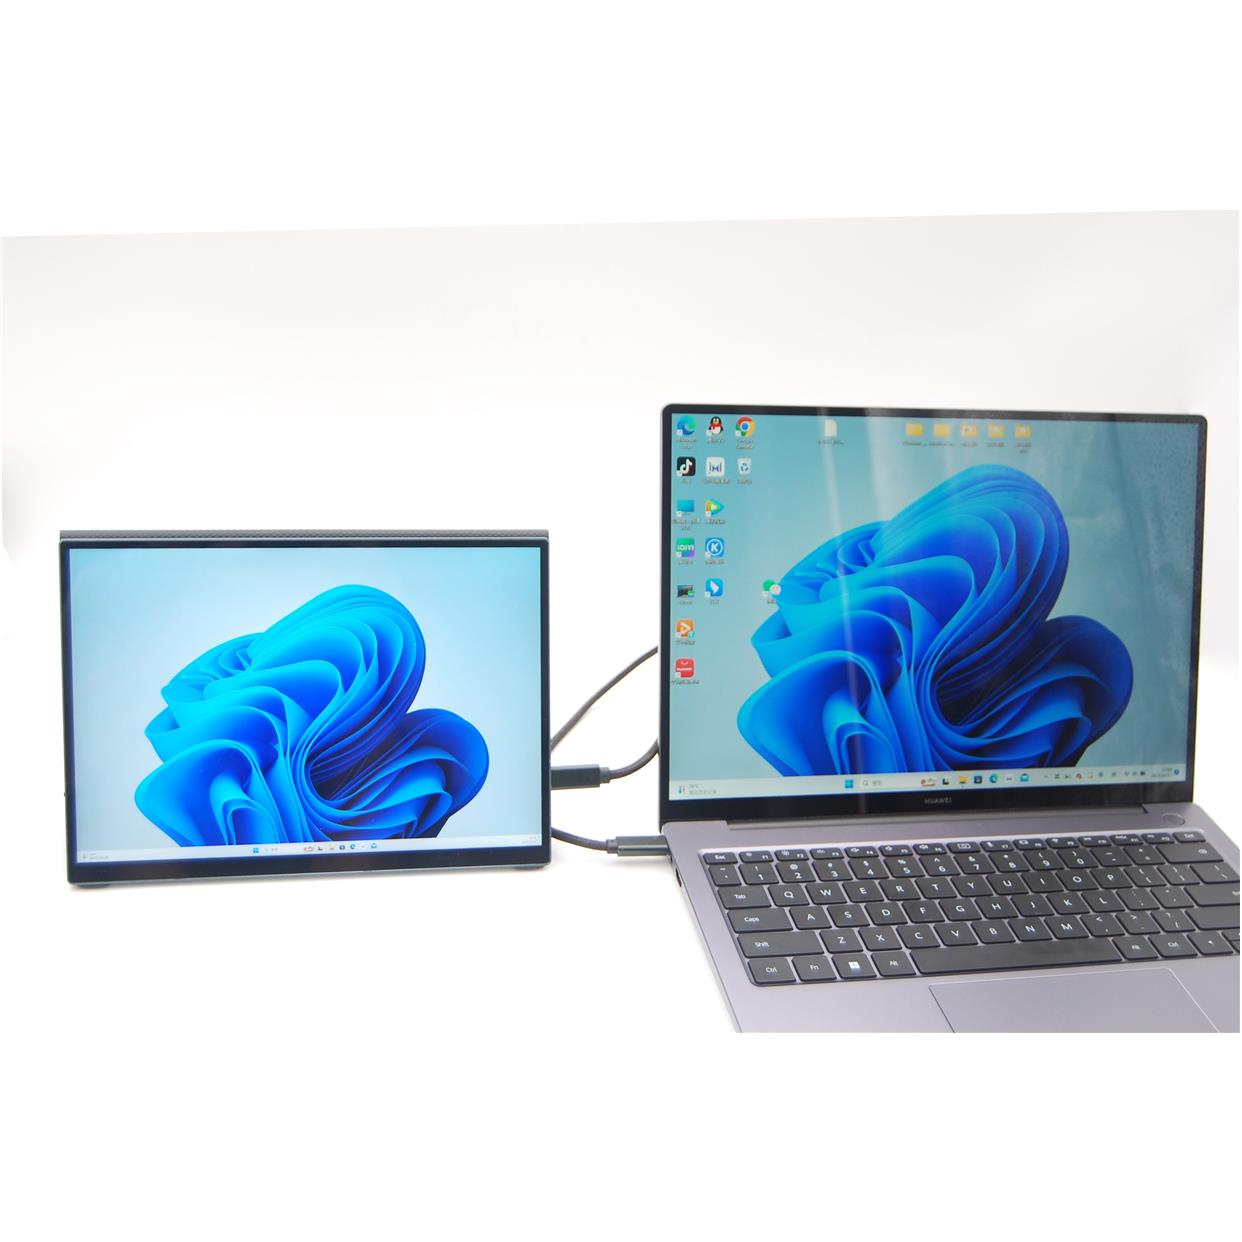 Adobe100%SRGB适用微软surf系列 触摸扩展显示器 街头光10.5寸